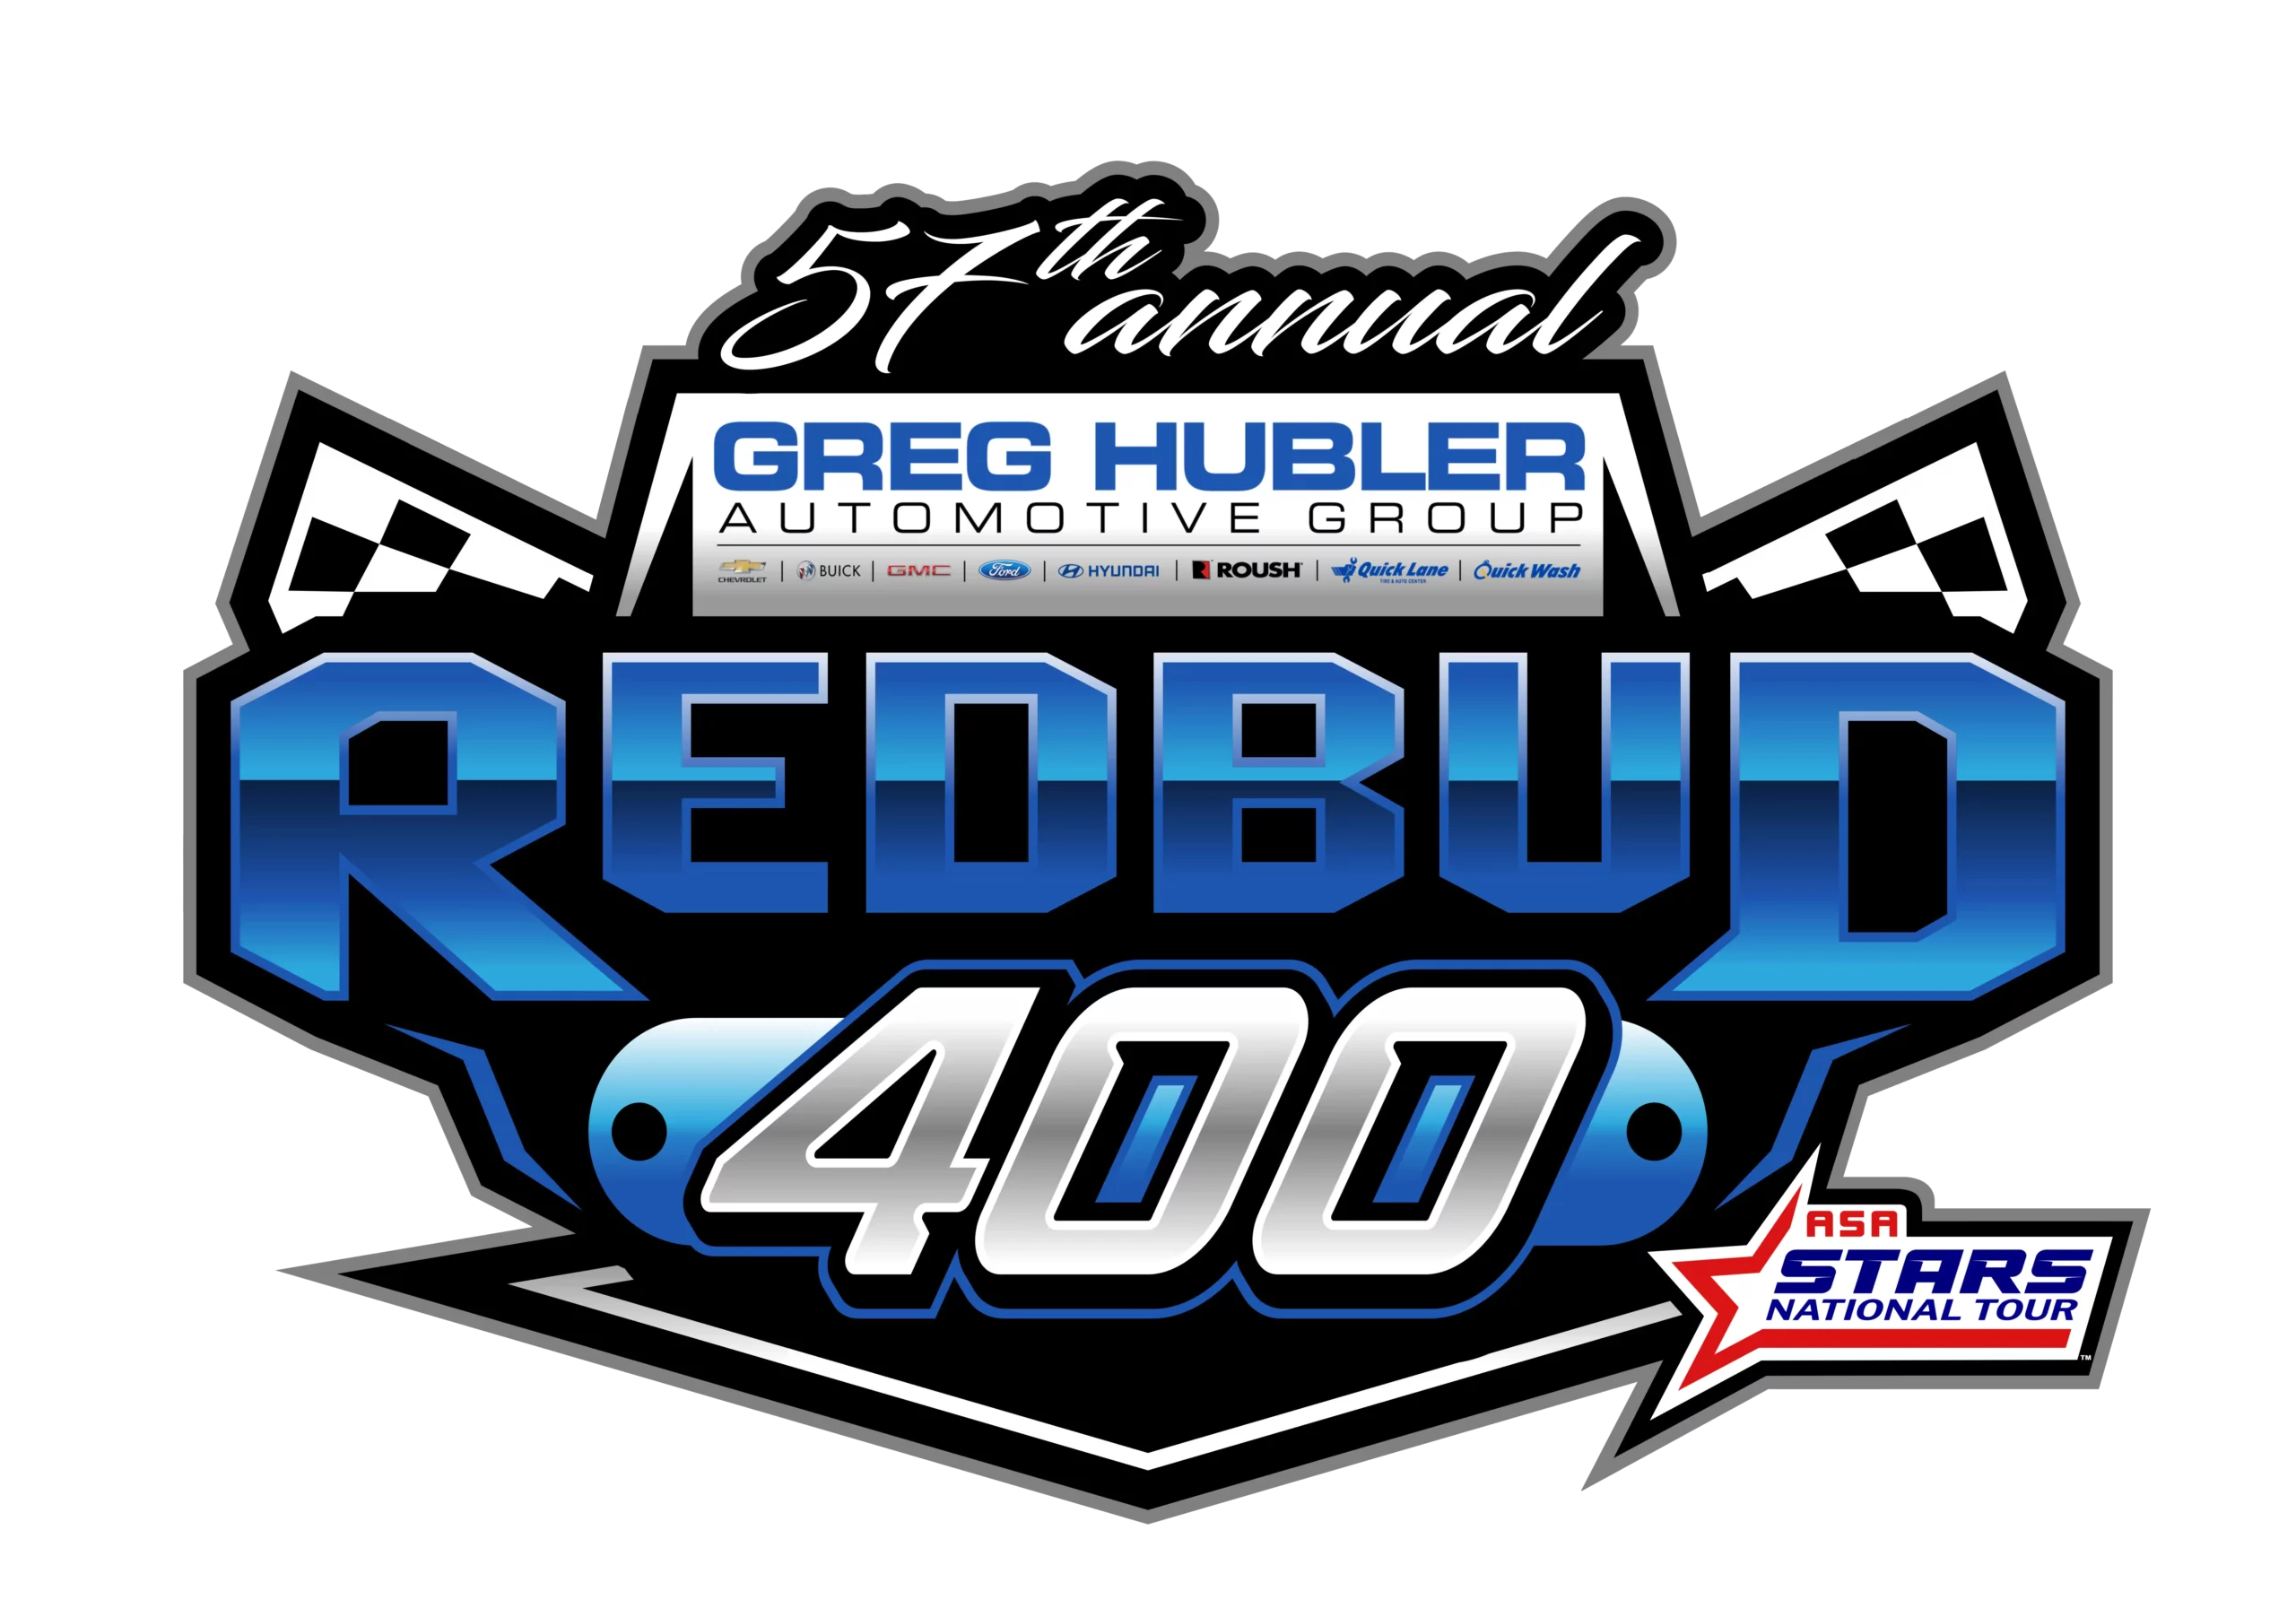 Greg Hubler Automotive Group Redbud 400 Event Logo